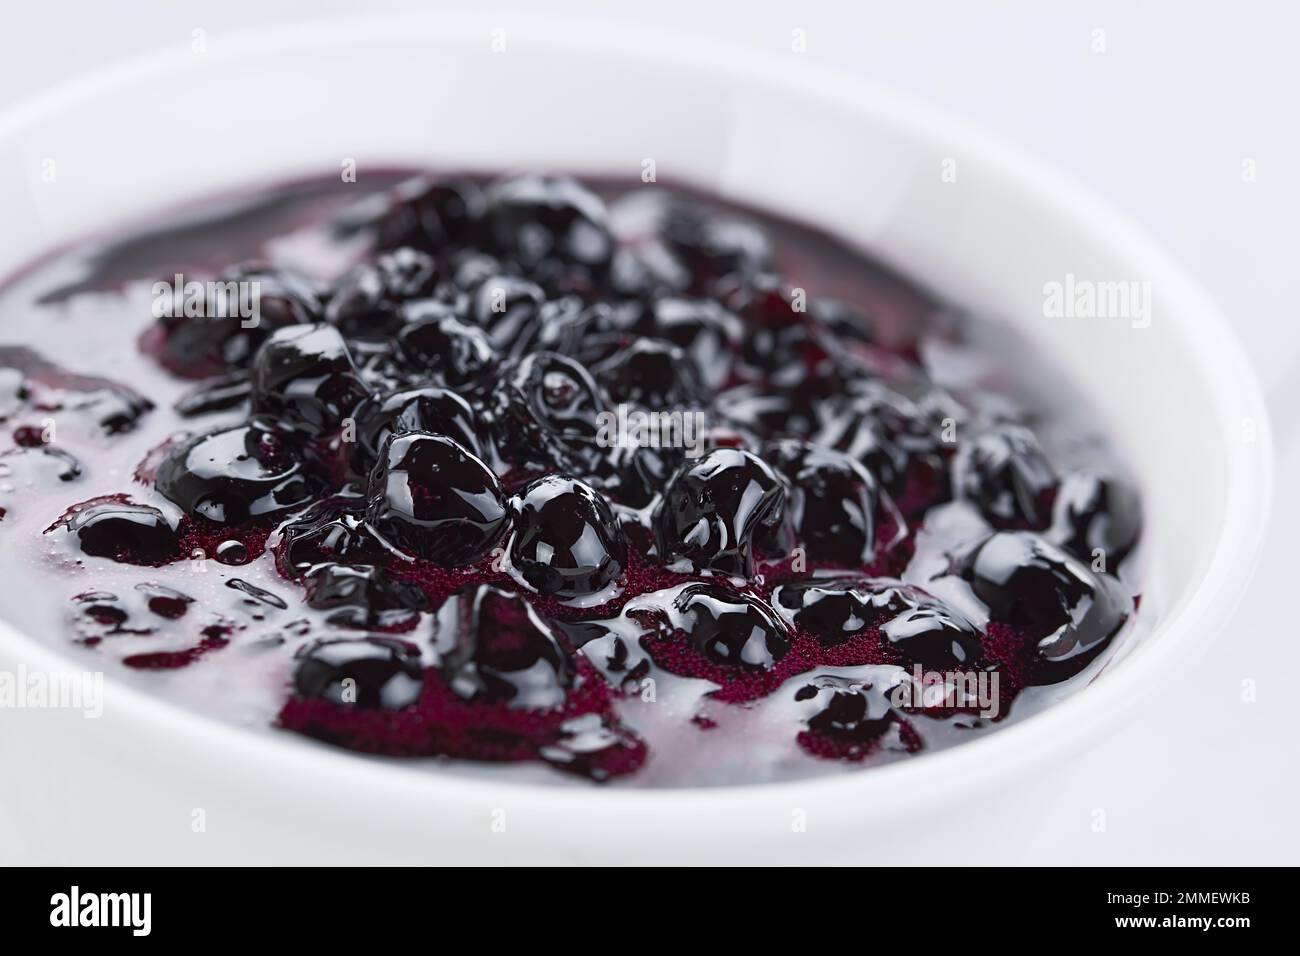 Fresh homemade jam made of Patagonian Calafate berries (lat. Berberis heterophylla), served in white bowl (Selective Focus) Stock Photo